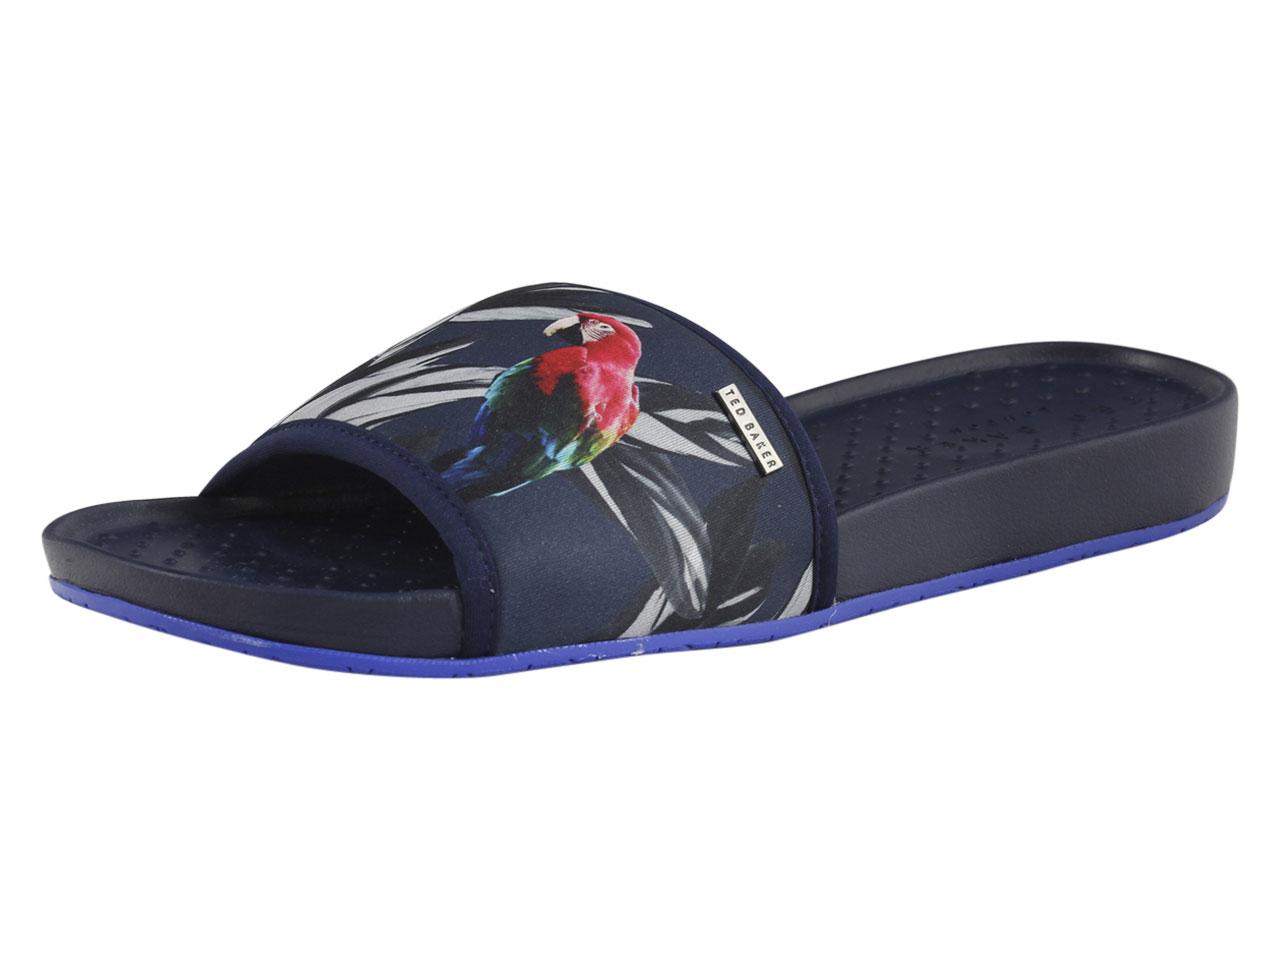 Ted Baker Men's Sauldi Slides Sandals Shoes - Blue - 9 D(M) US